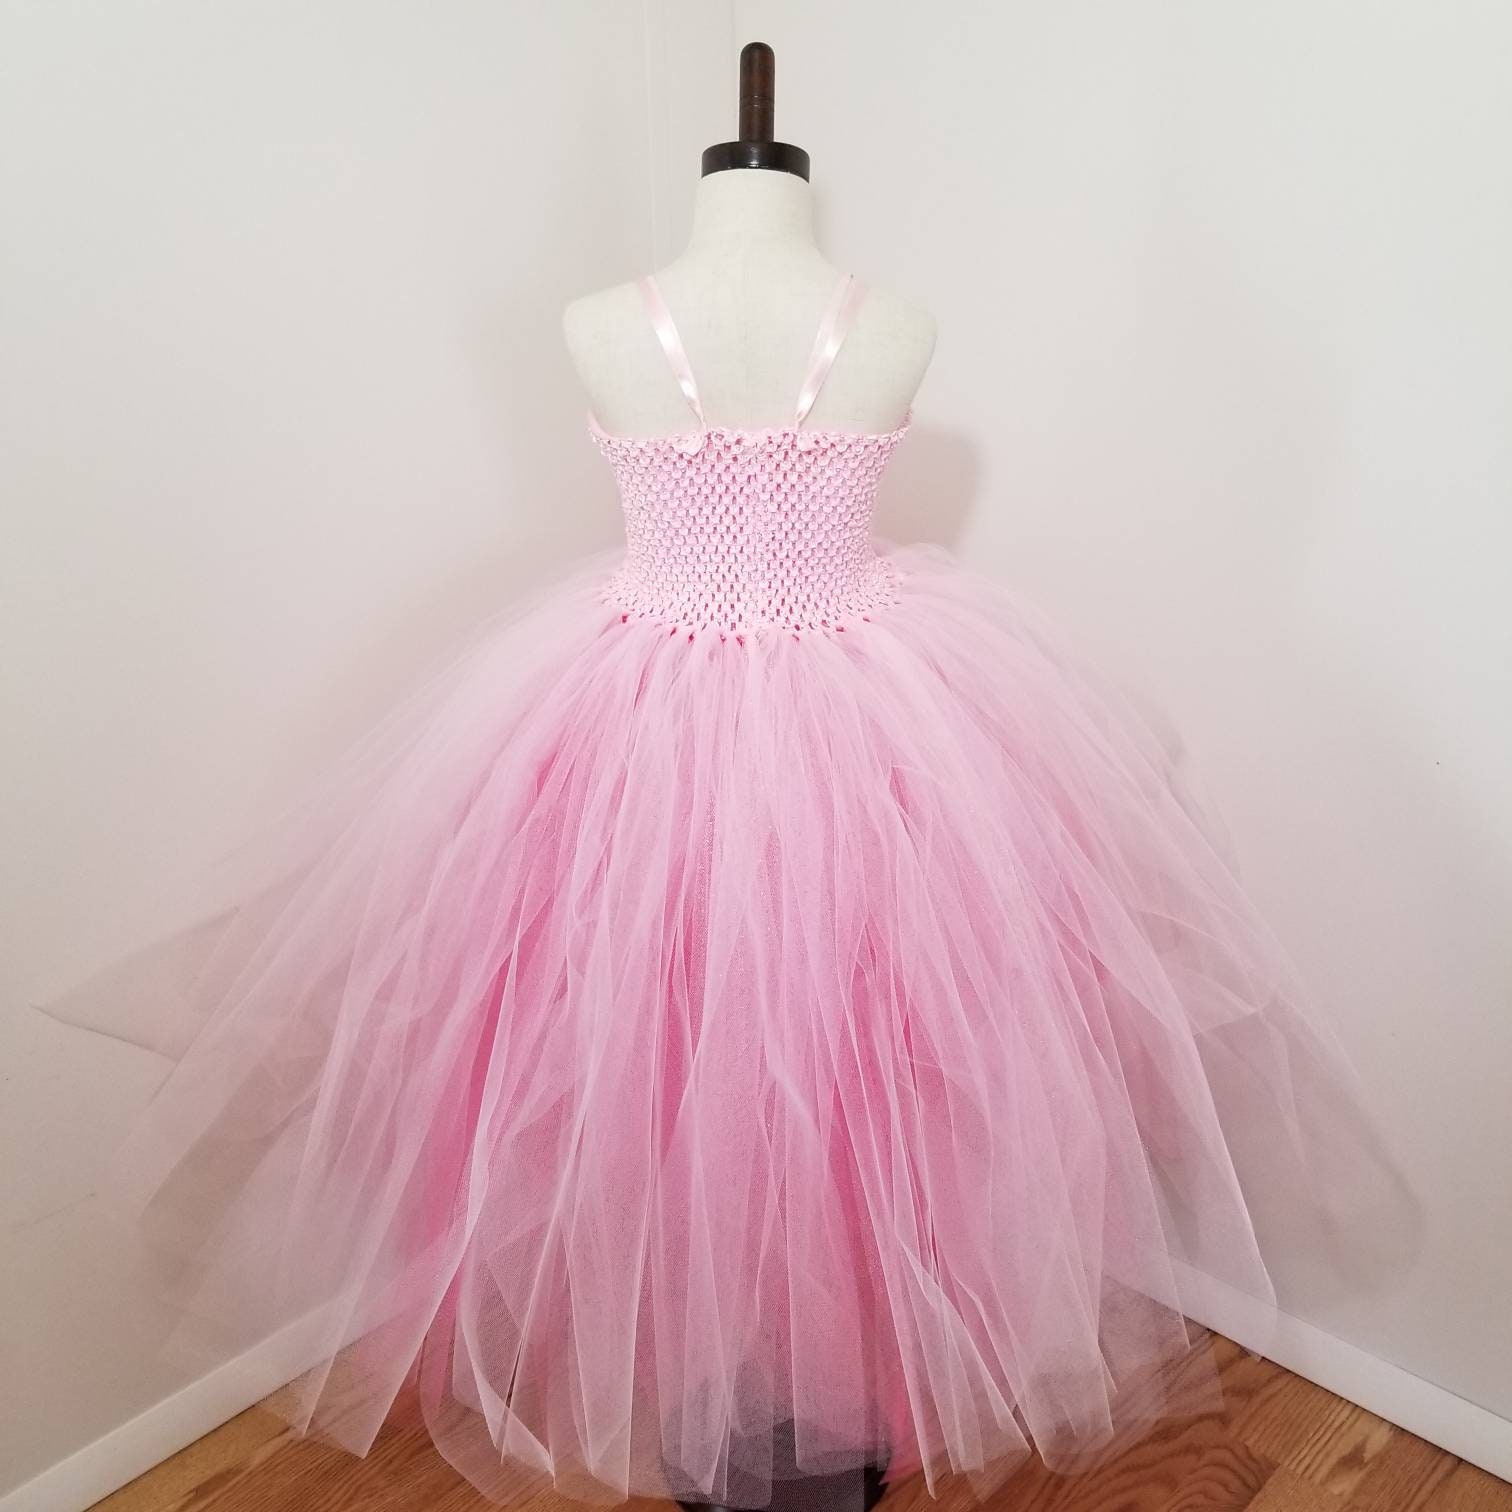 Perfectly Pink Princess Tutu Dress | Etsy